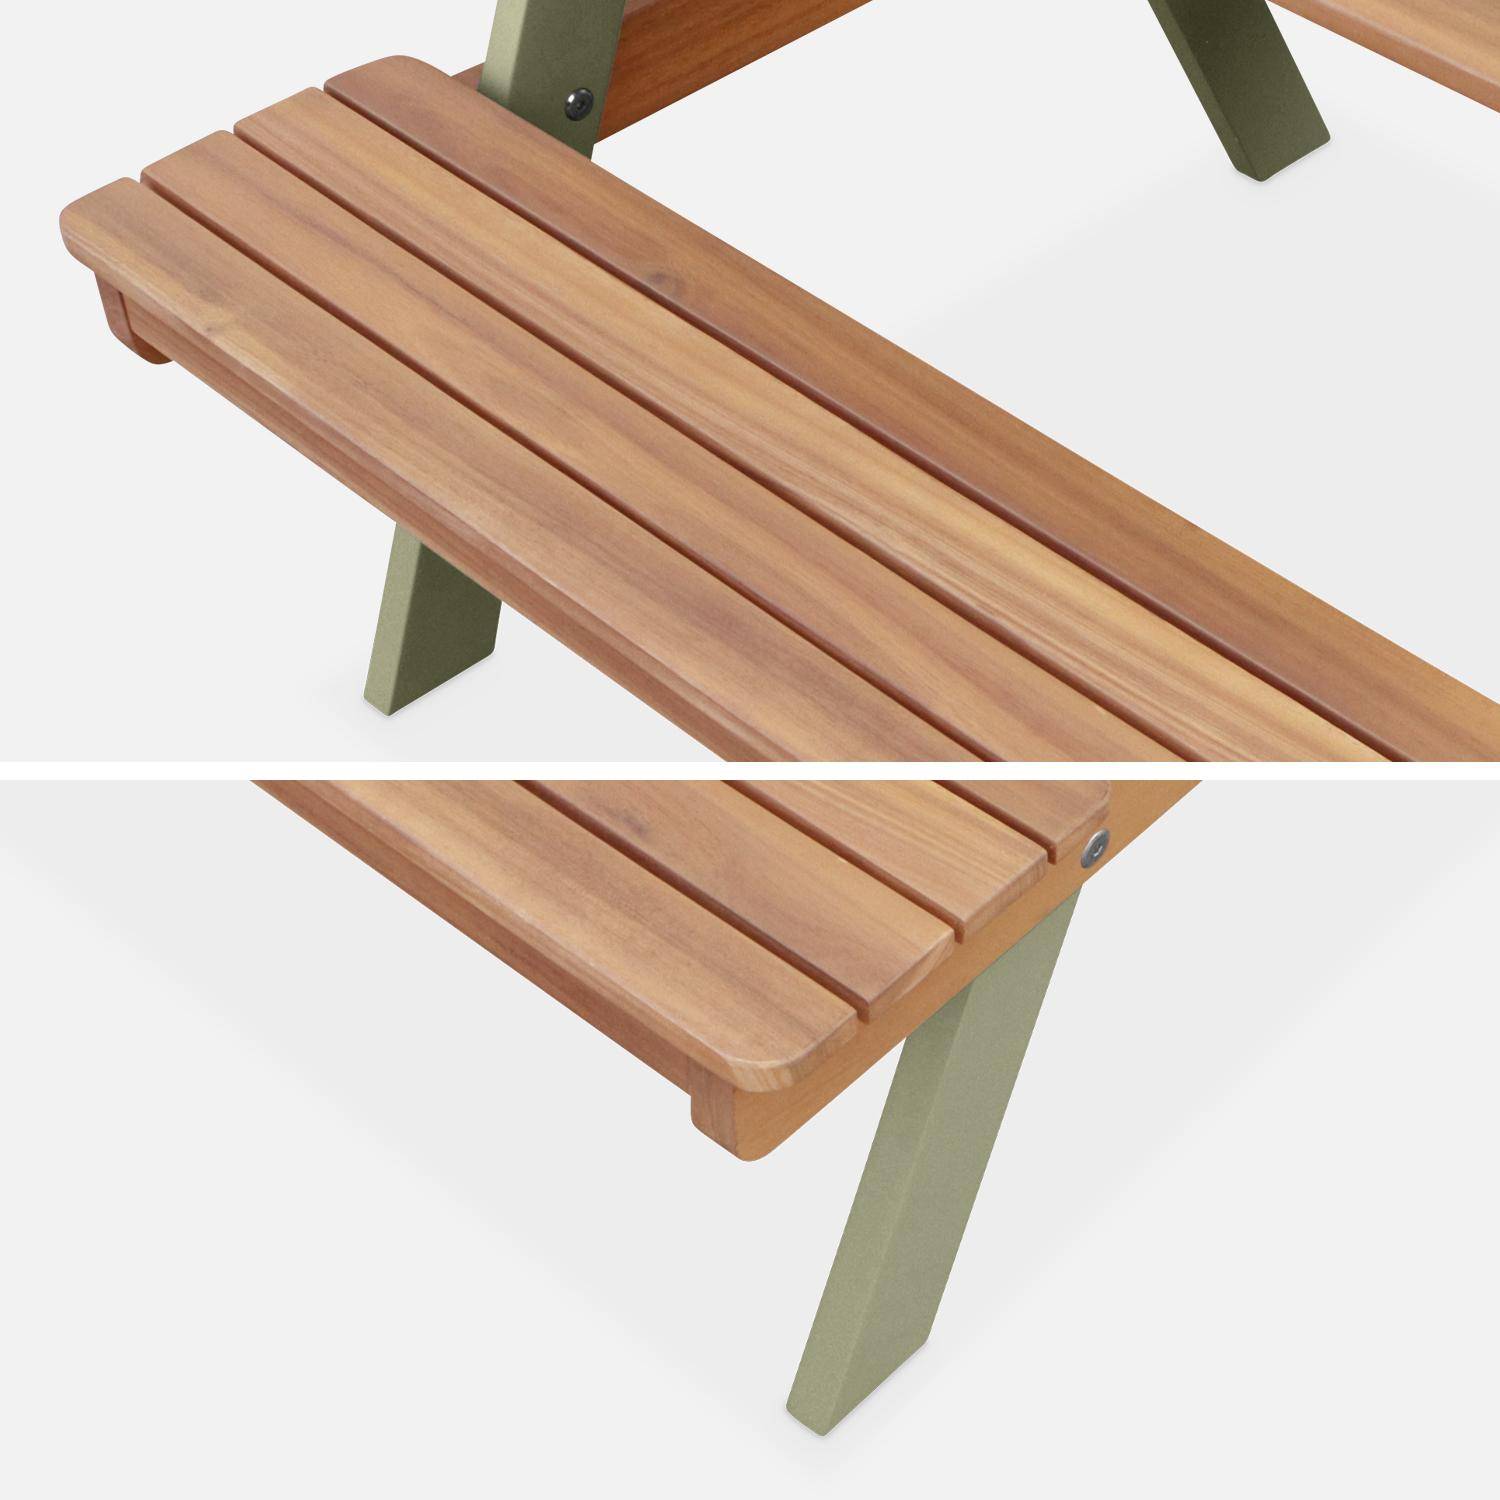 Picknicktisch aus hellem Akazienholz für Kinder, 2 Sitzplätze, naturfarben und graugrün,sweeek,Photo5